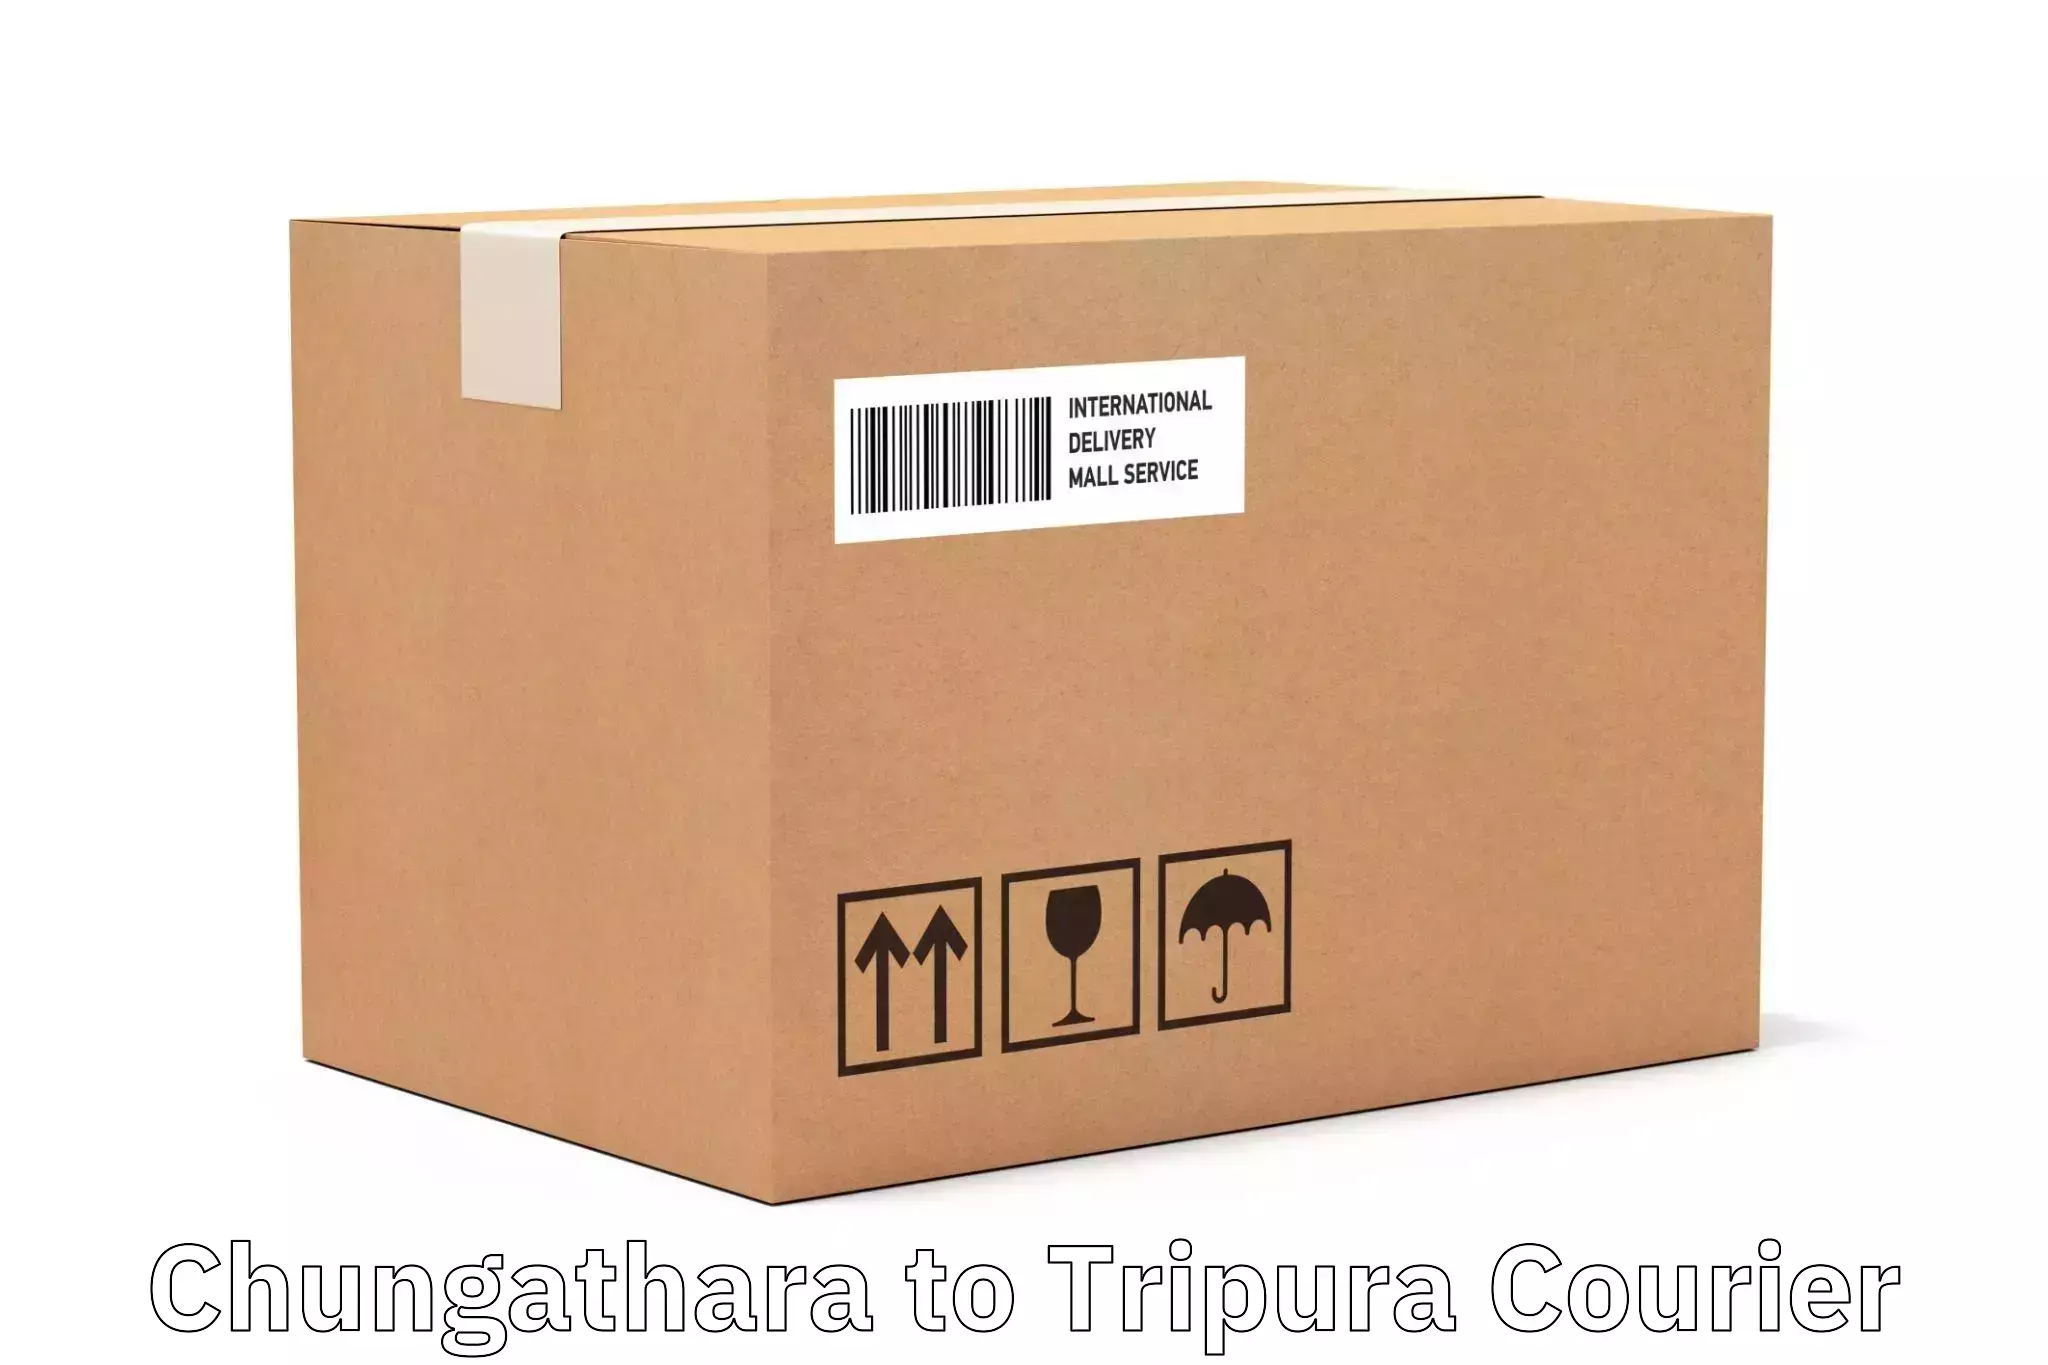 Business logistics support Chungathara to Aambasa